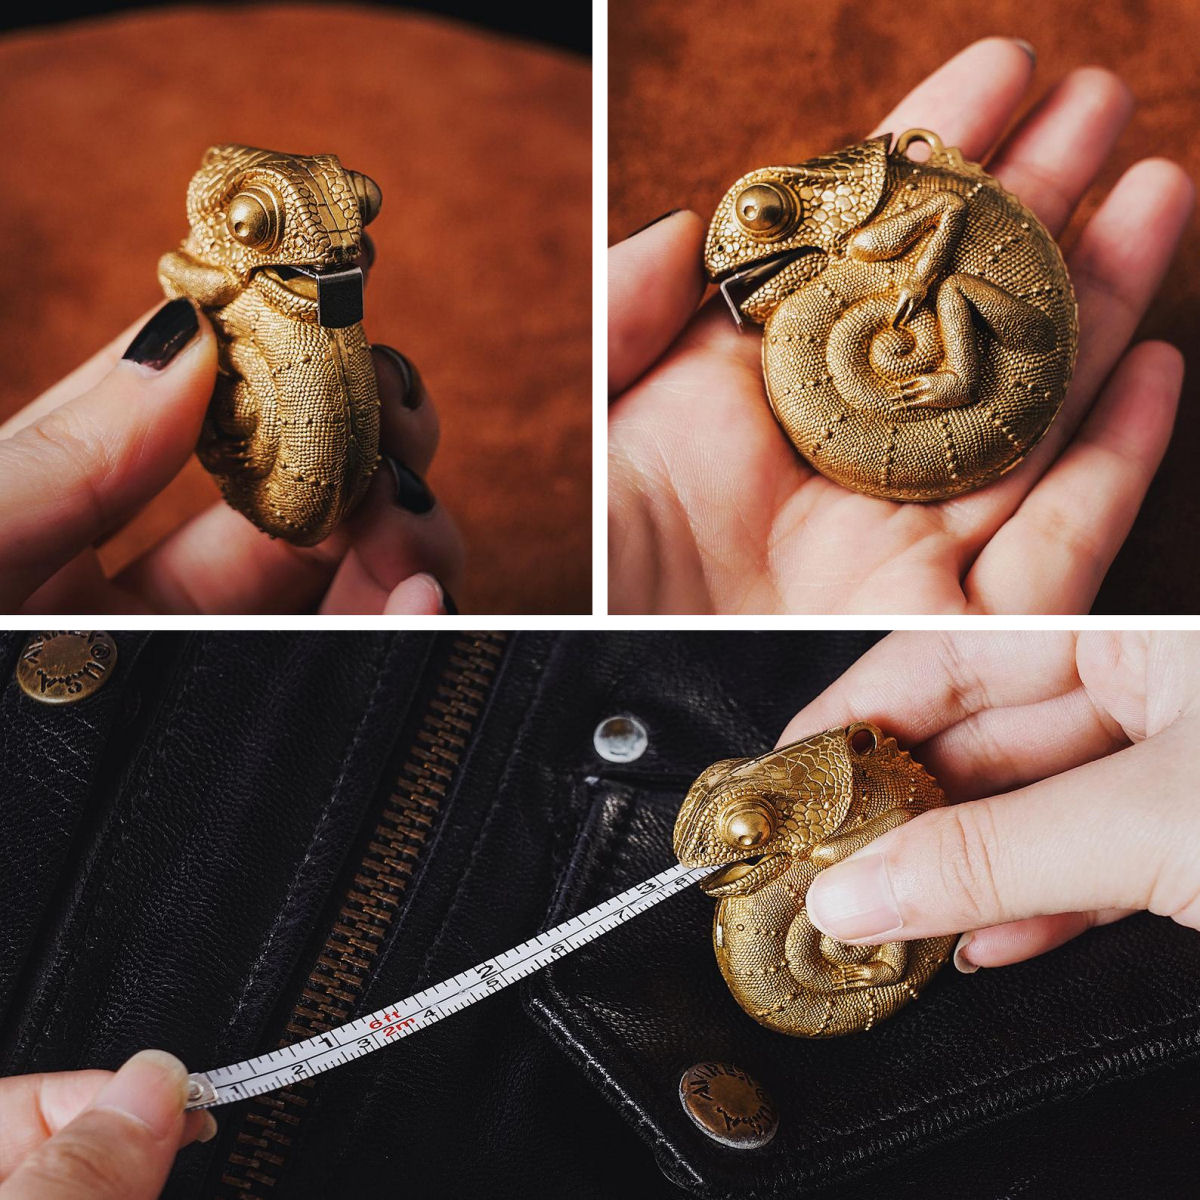 Mini escultura em forma de camaleão oculta uma trena de 1m80 em sua boca